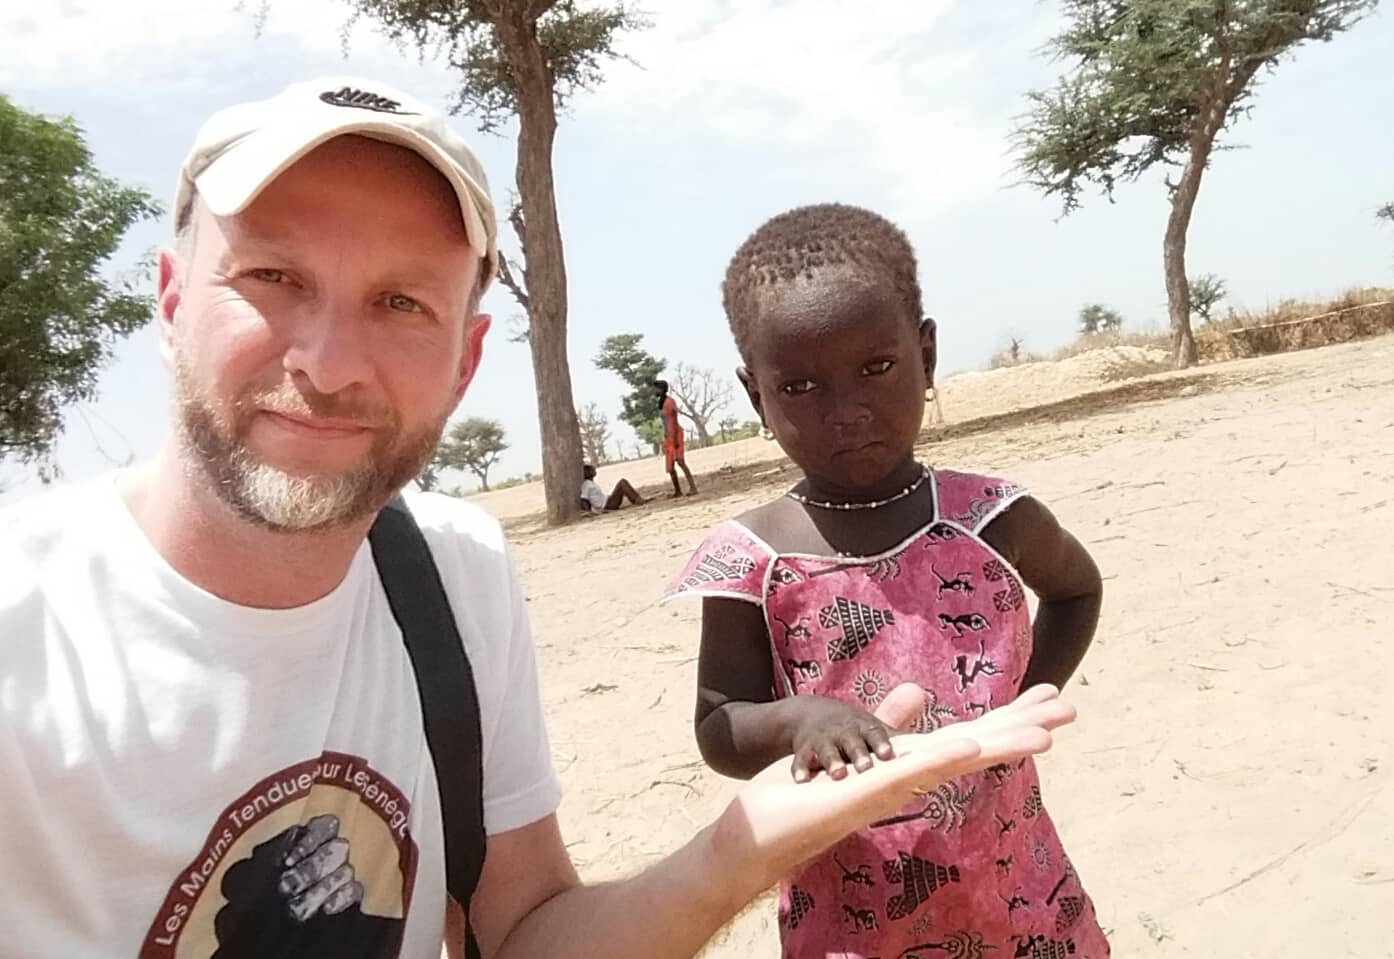 Kinder im Senegal